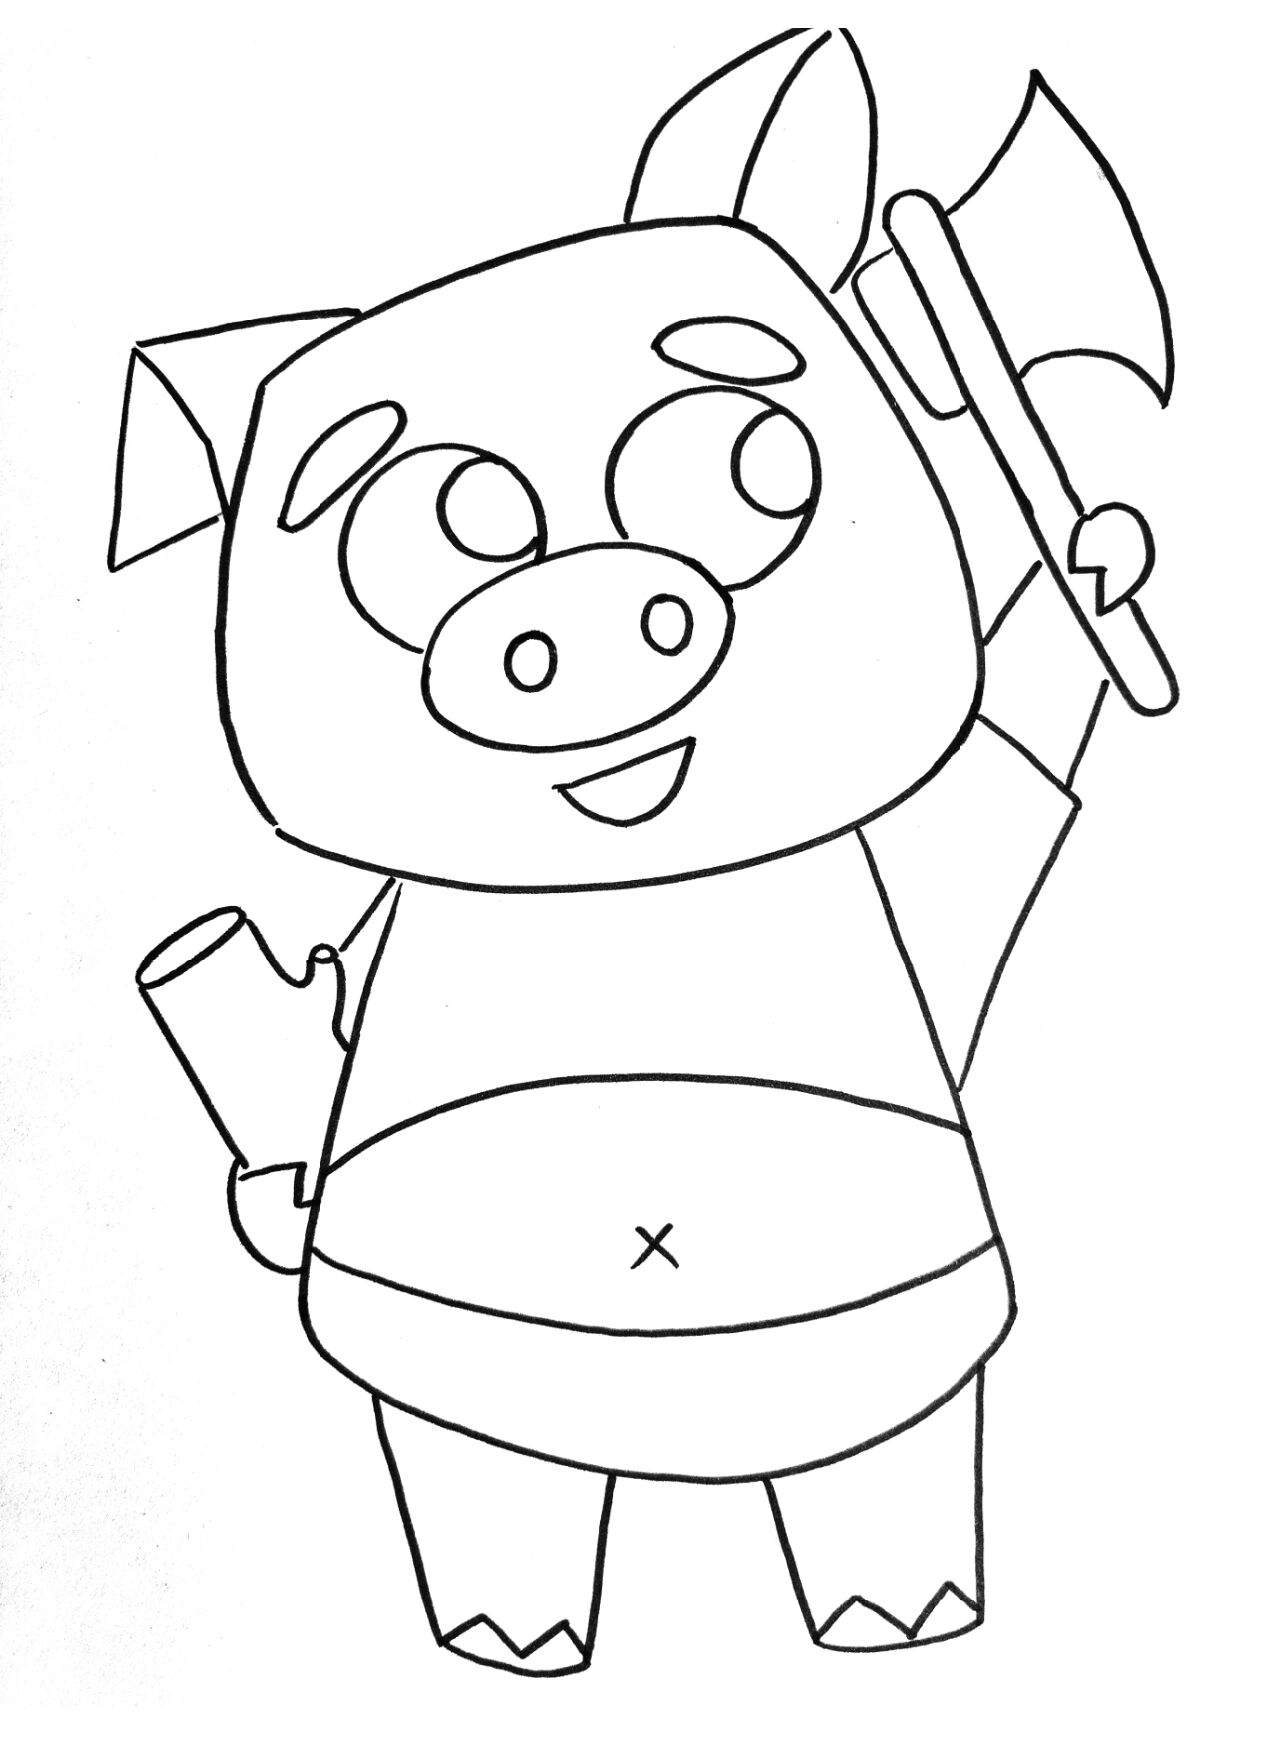 三只小猪怎么画简笔画图片